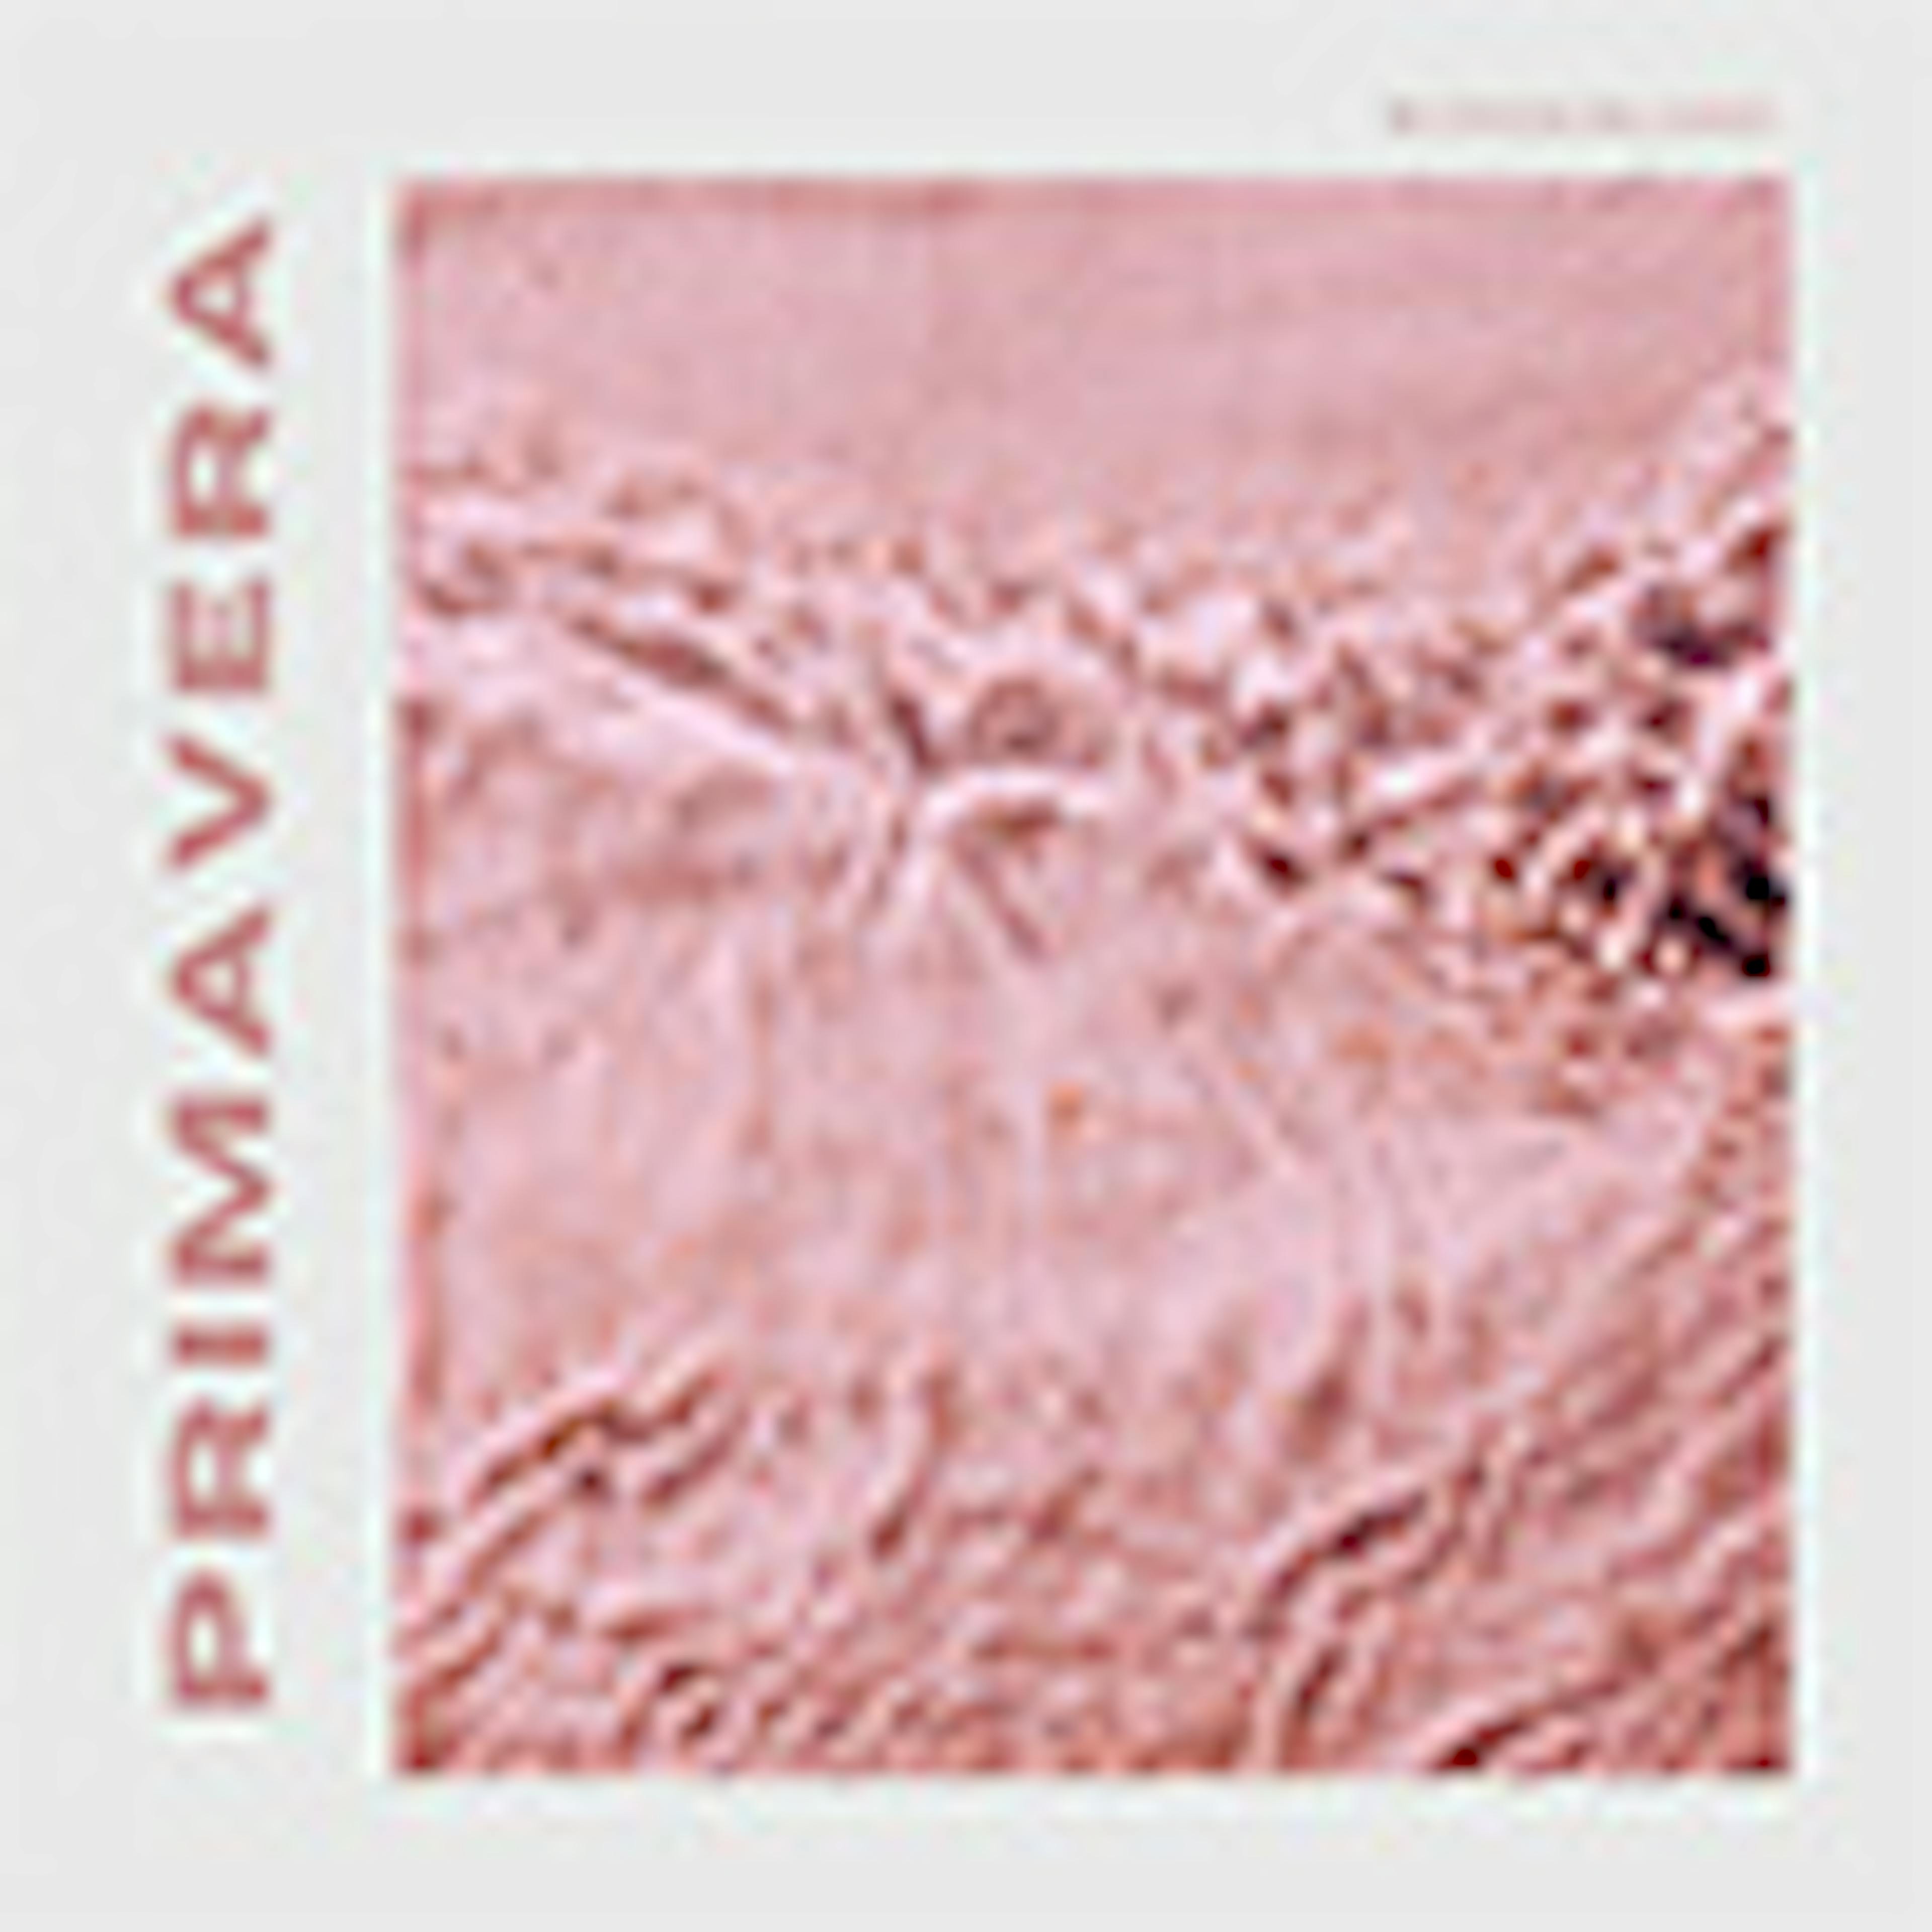 Prima Vera album cover